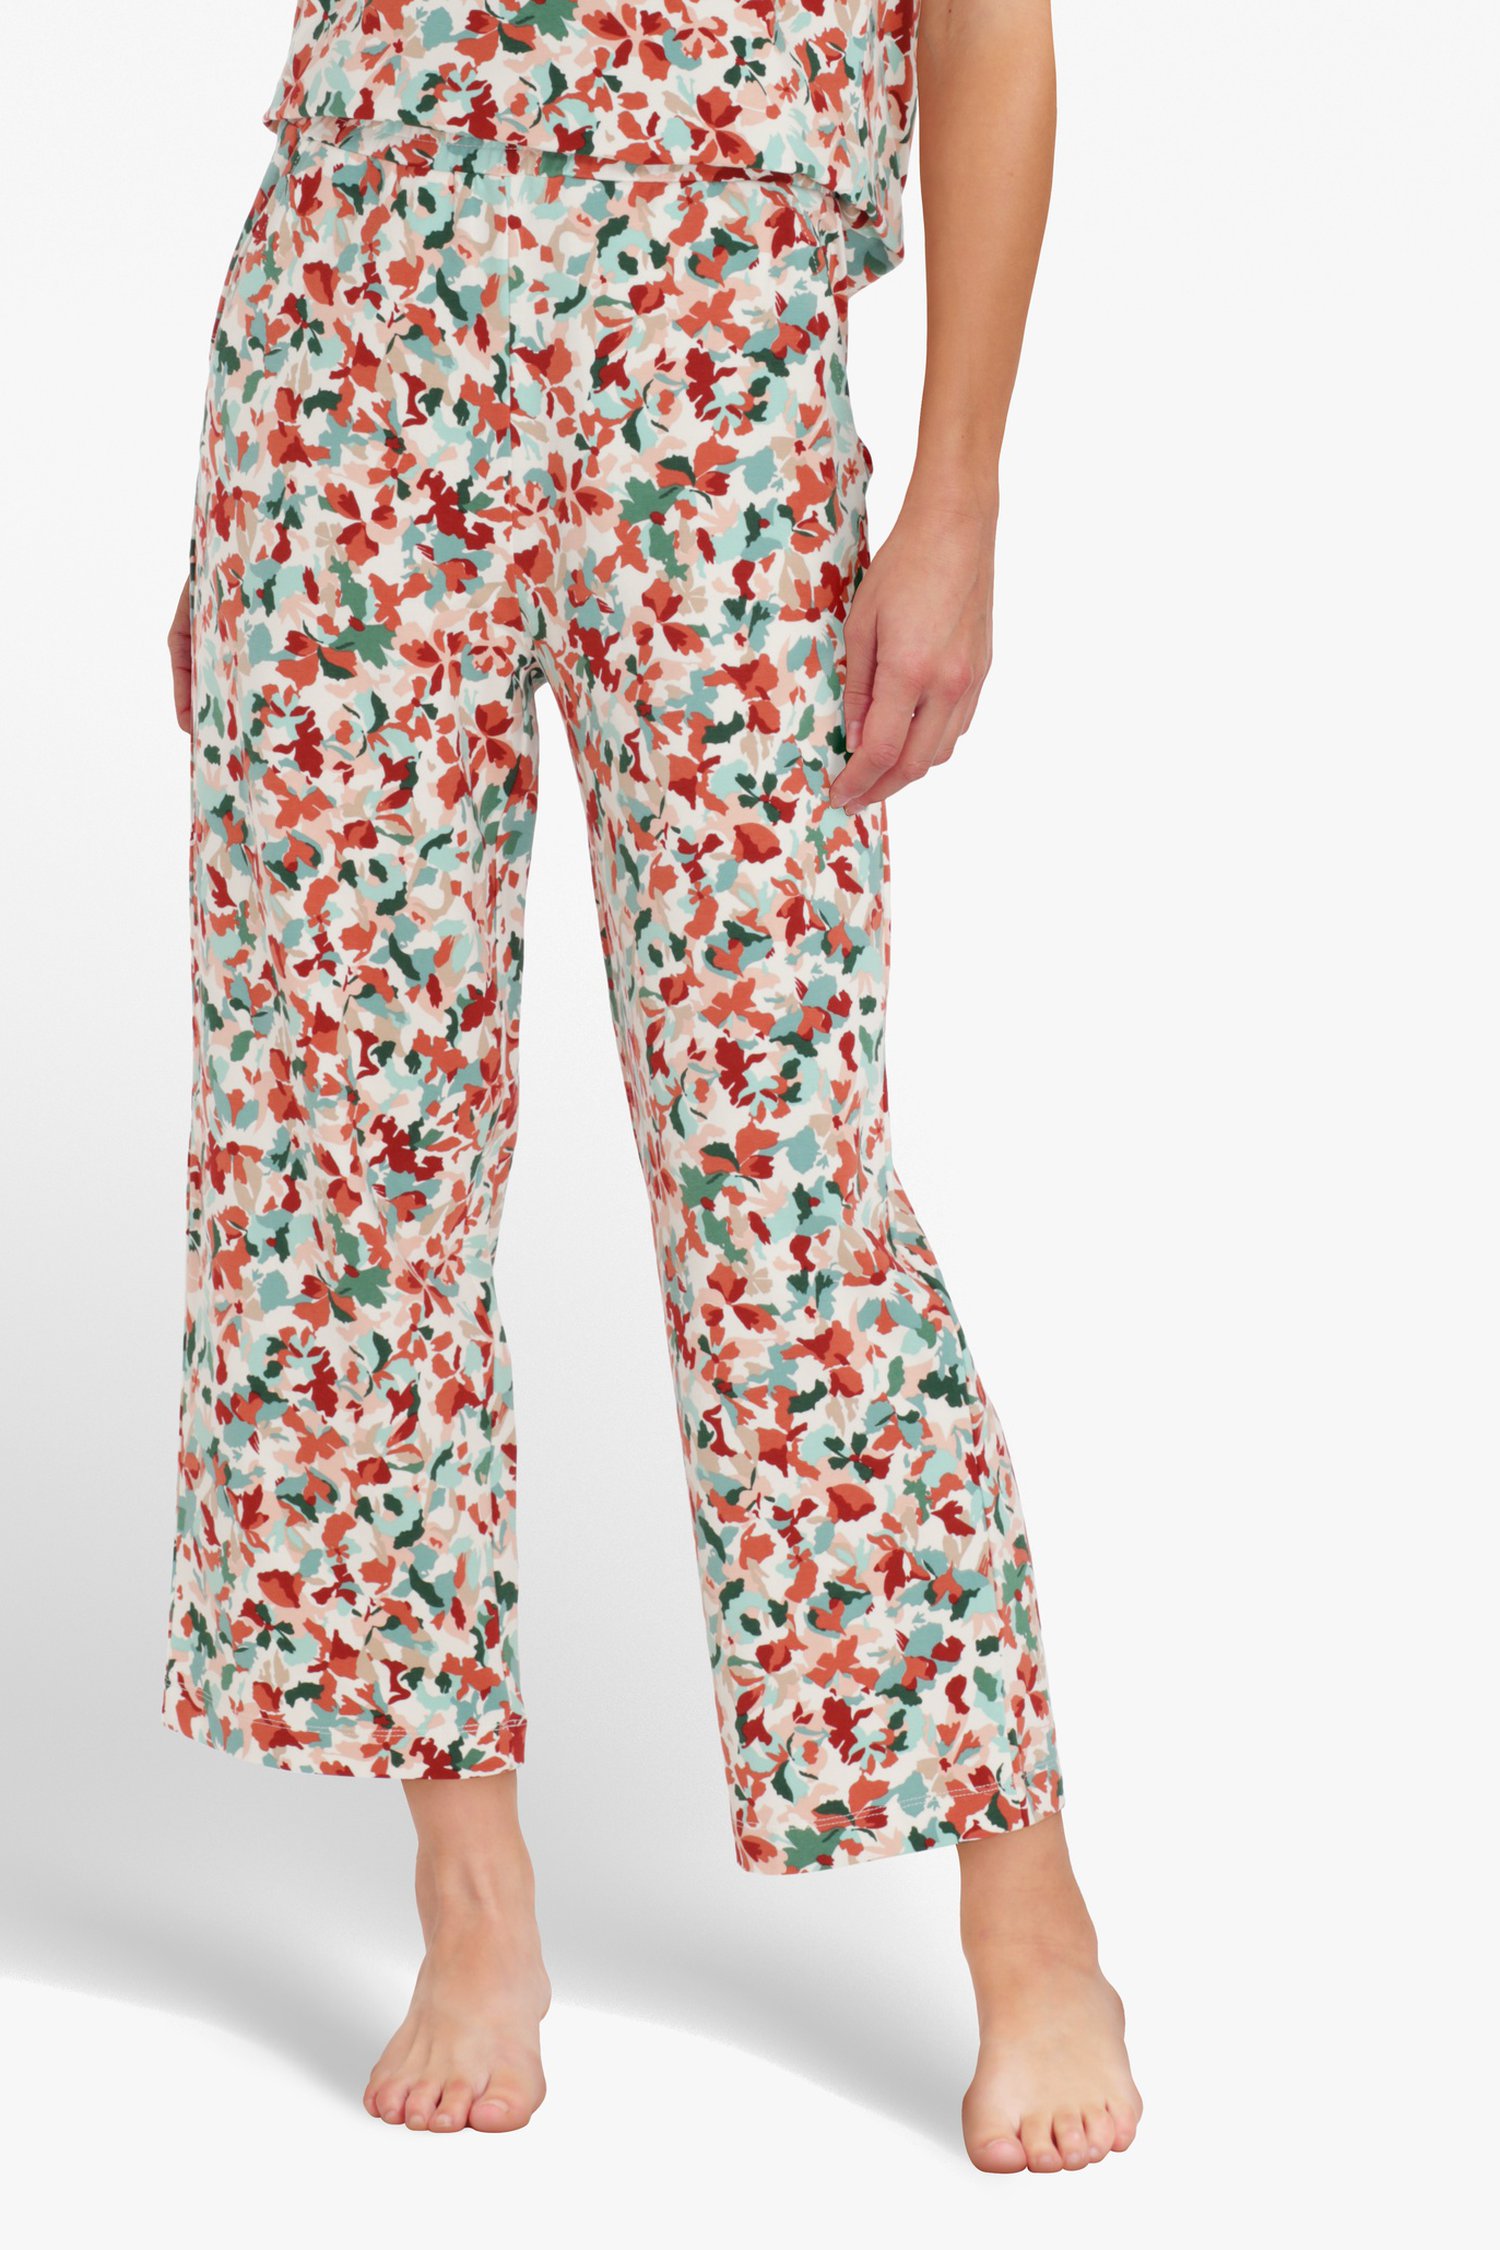 Ivoorwitte broek met print - straight fit van Liberty Island homewear voor Dames